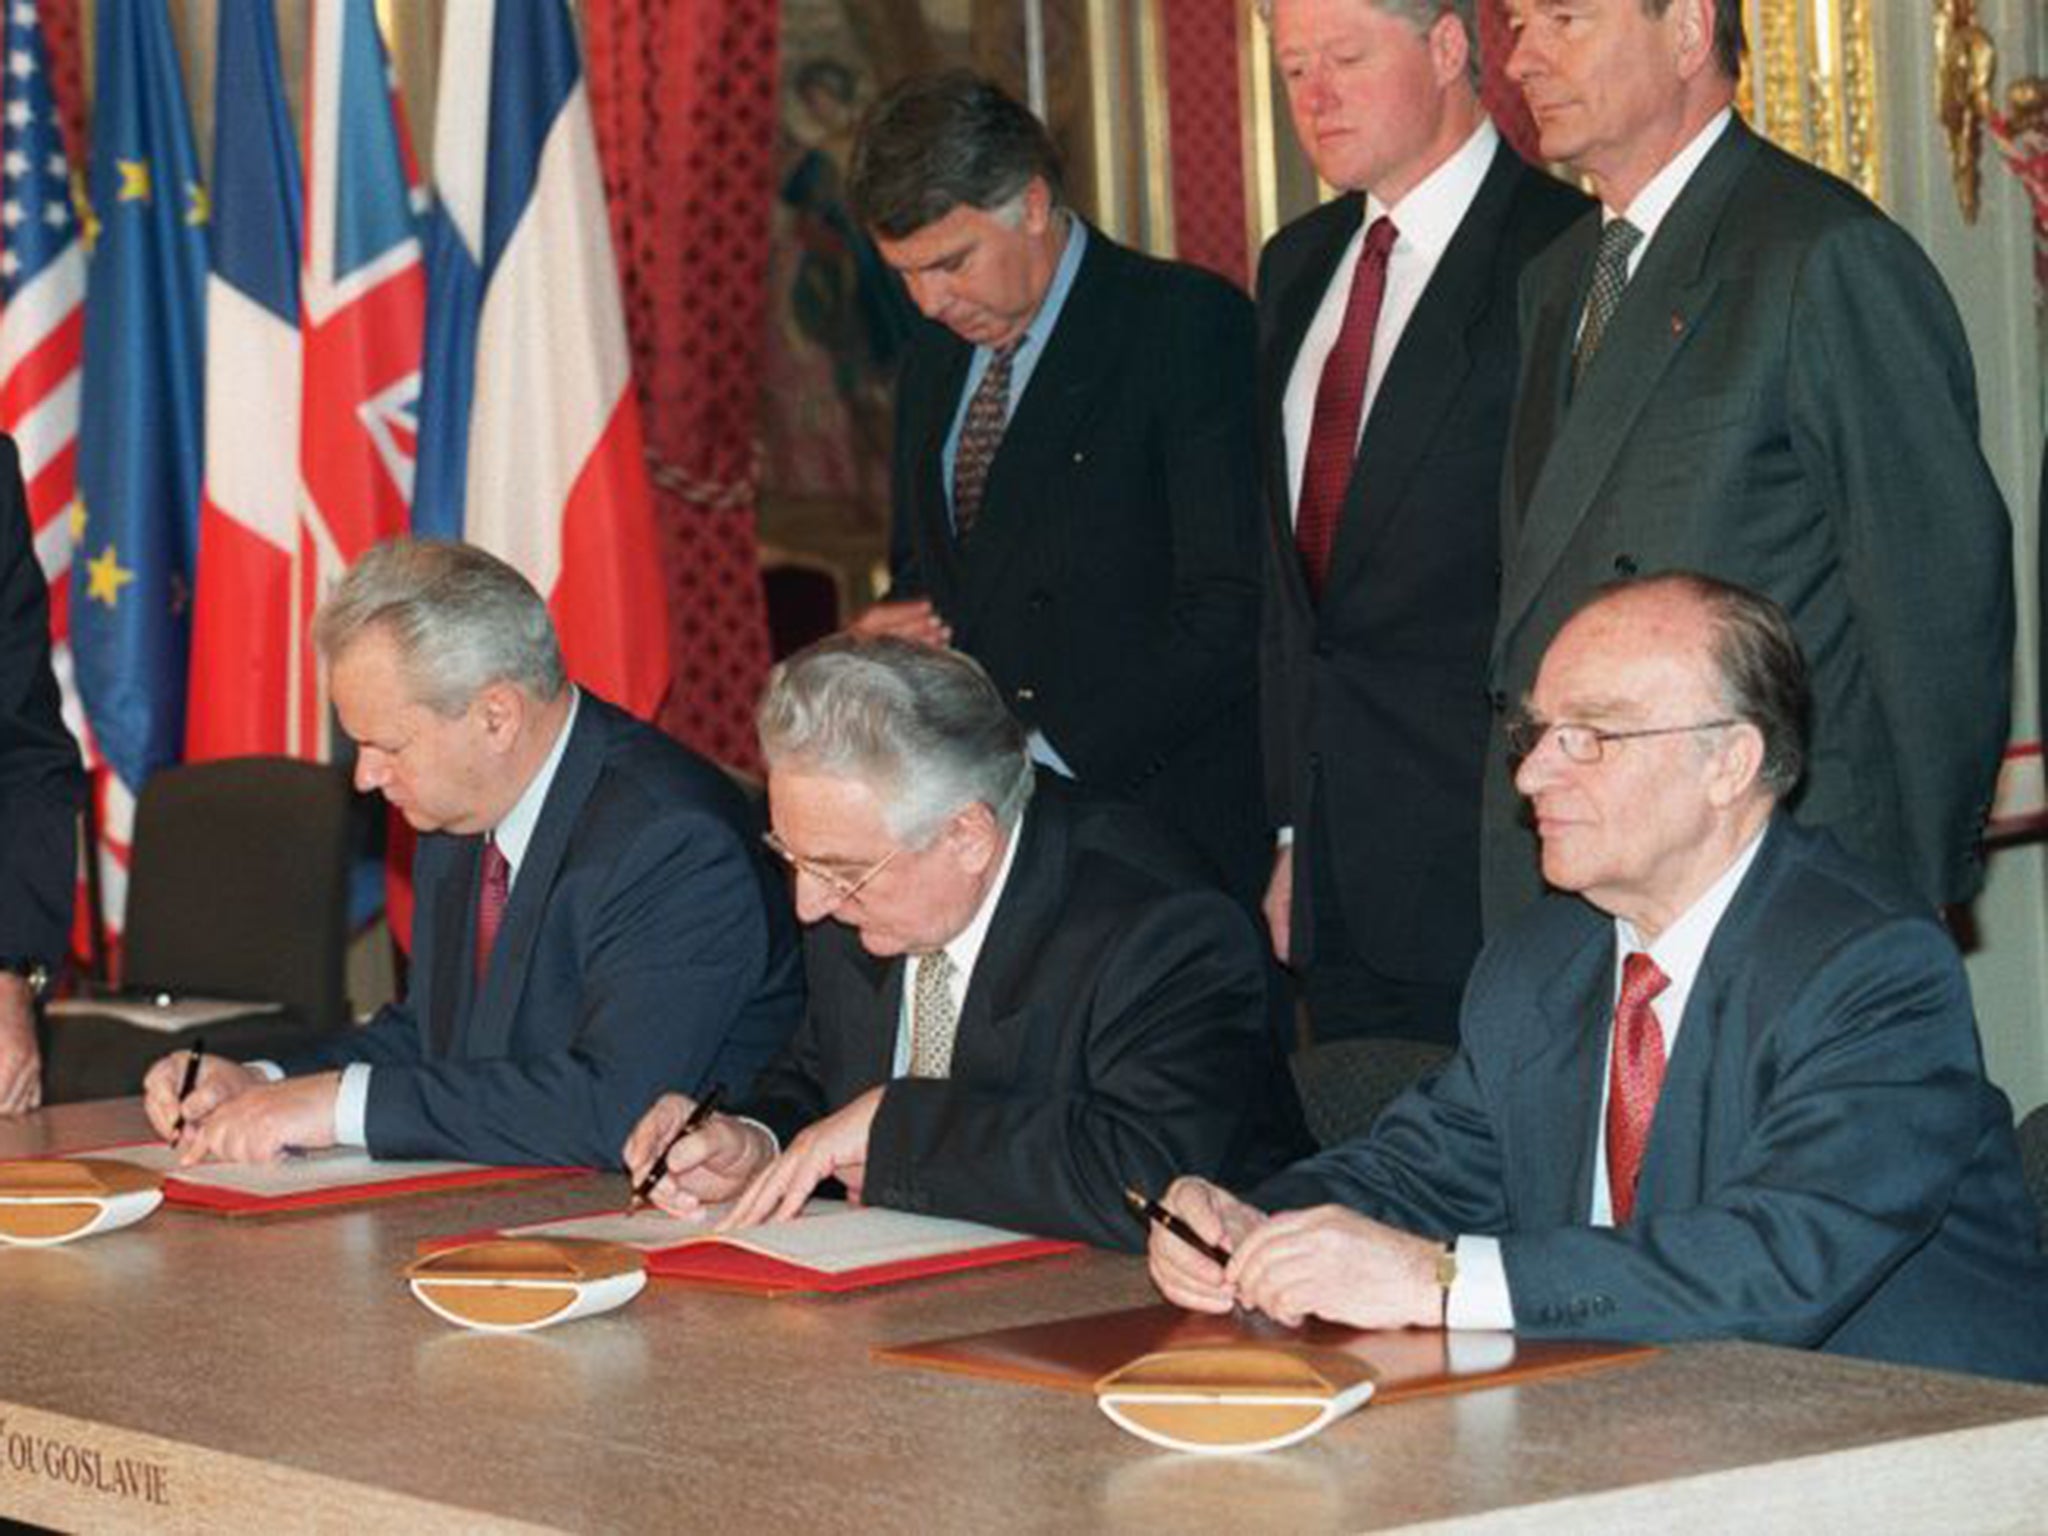 Slobodan Milosevic, Alija Izetbegovic and Franjo Tudjman sign the Dayton peace accord in Paris in 1995